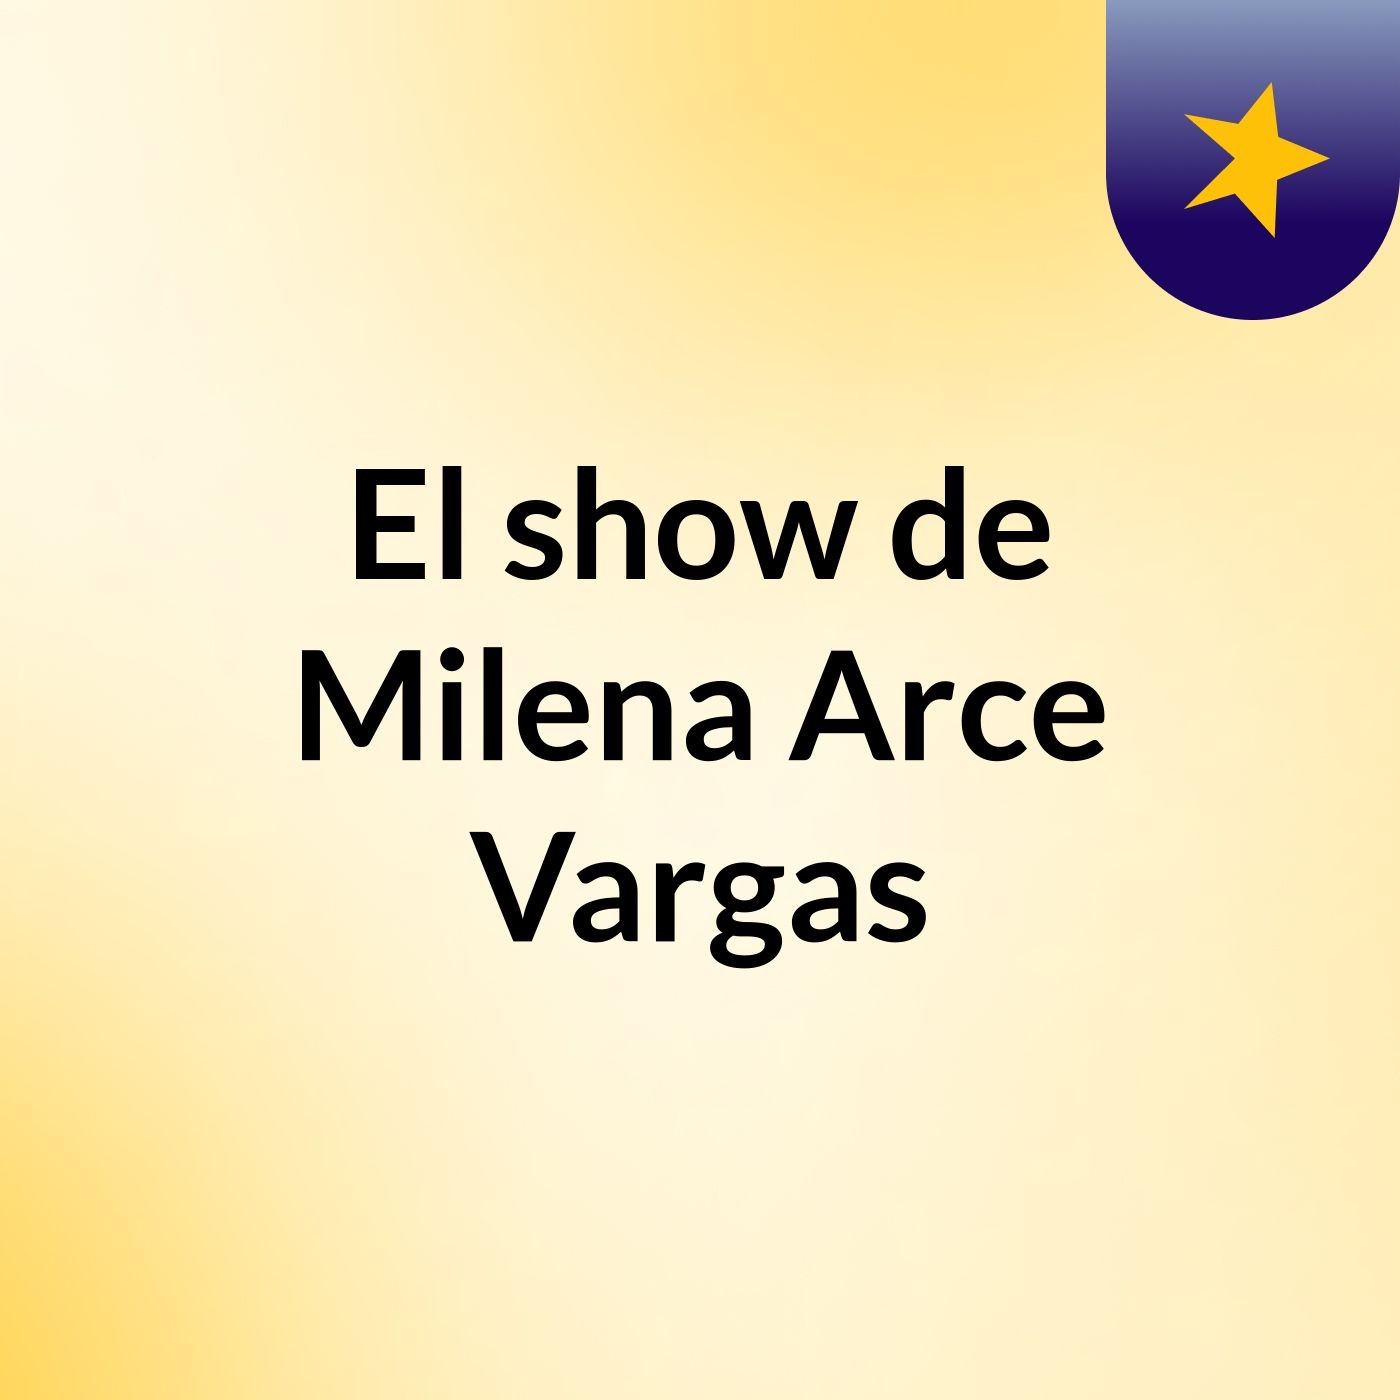 El show de Milena Arce Vargas